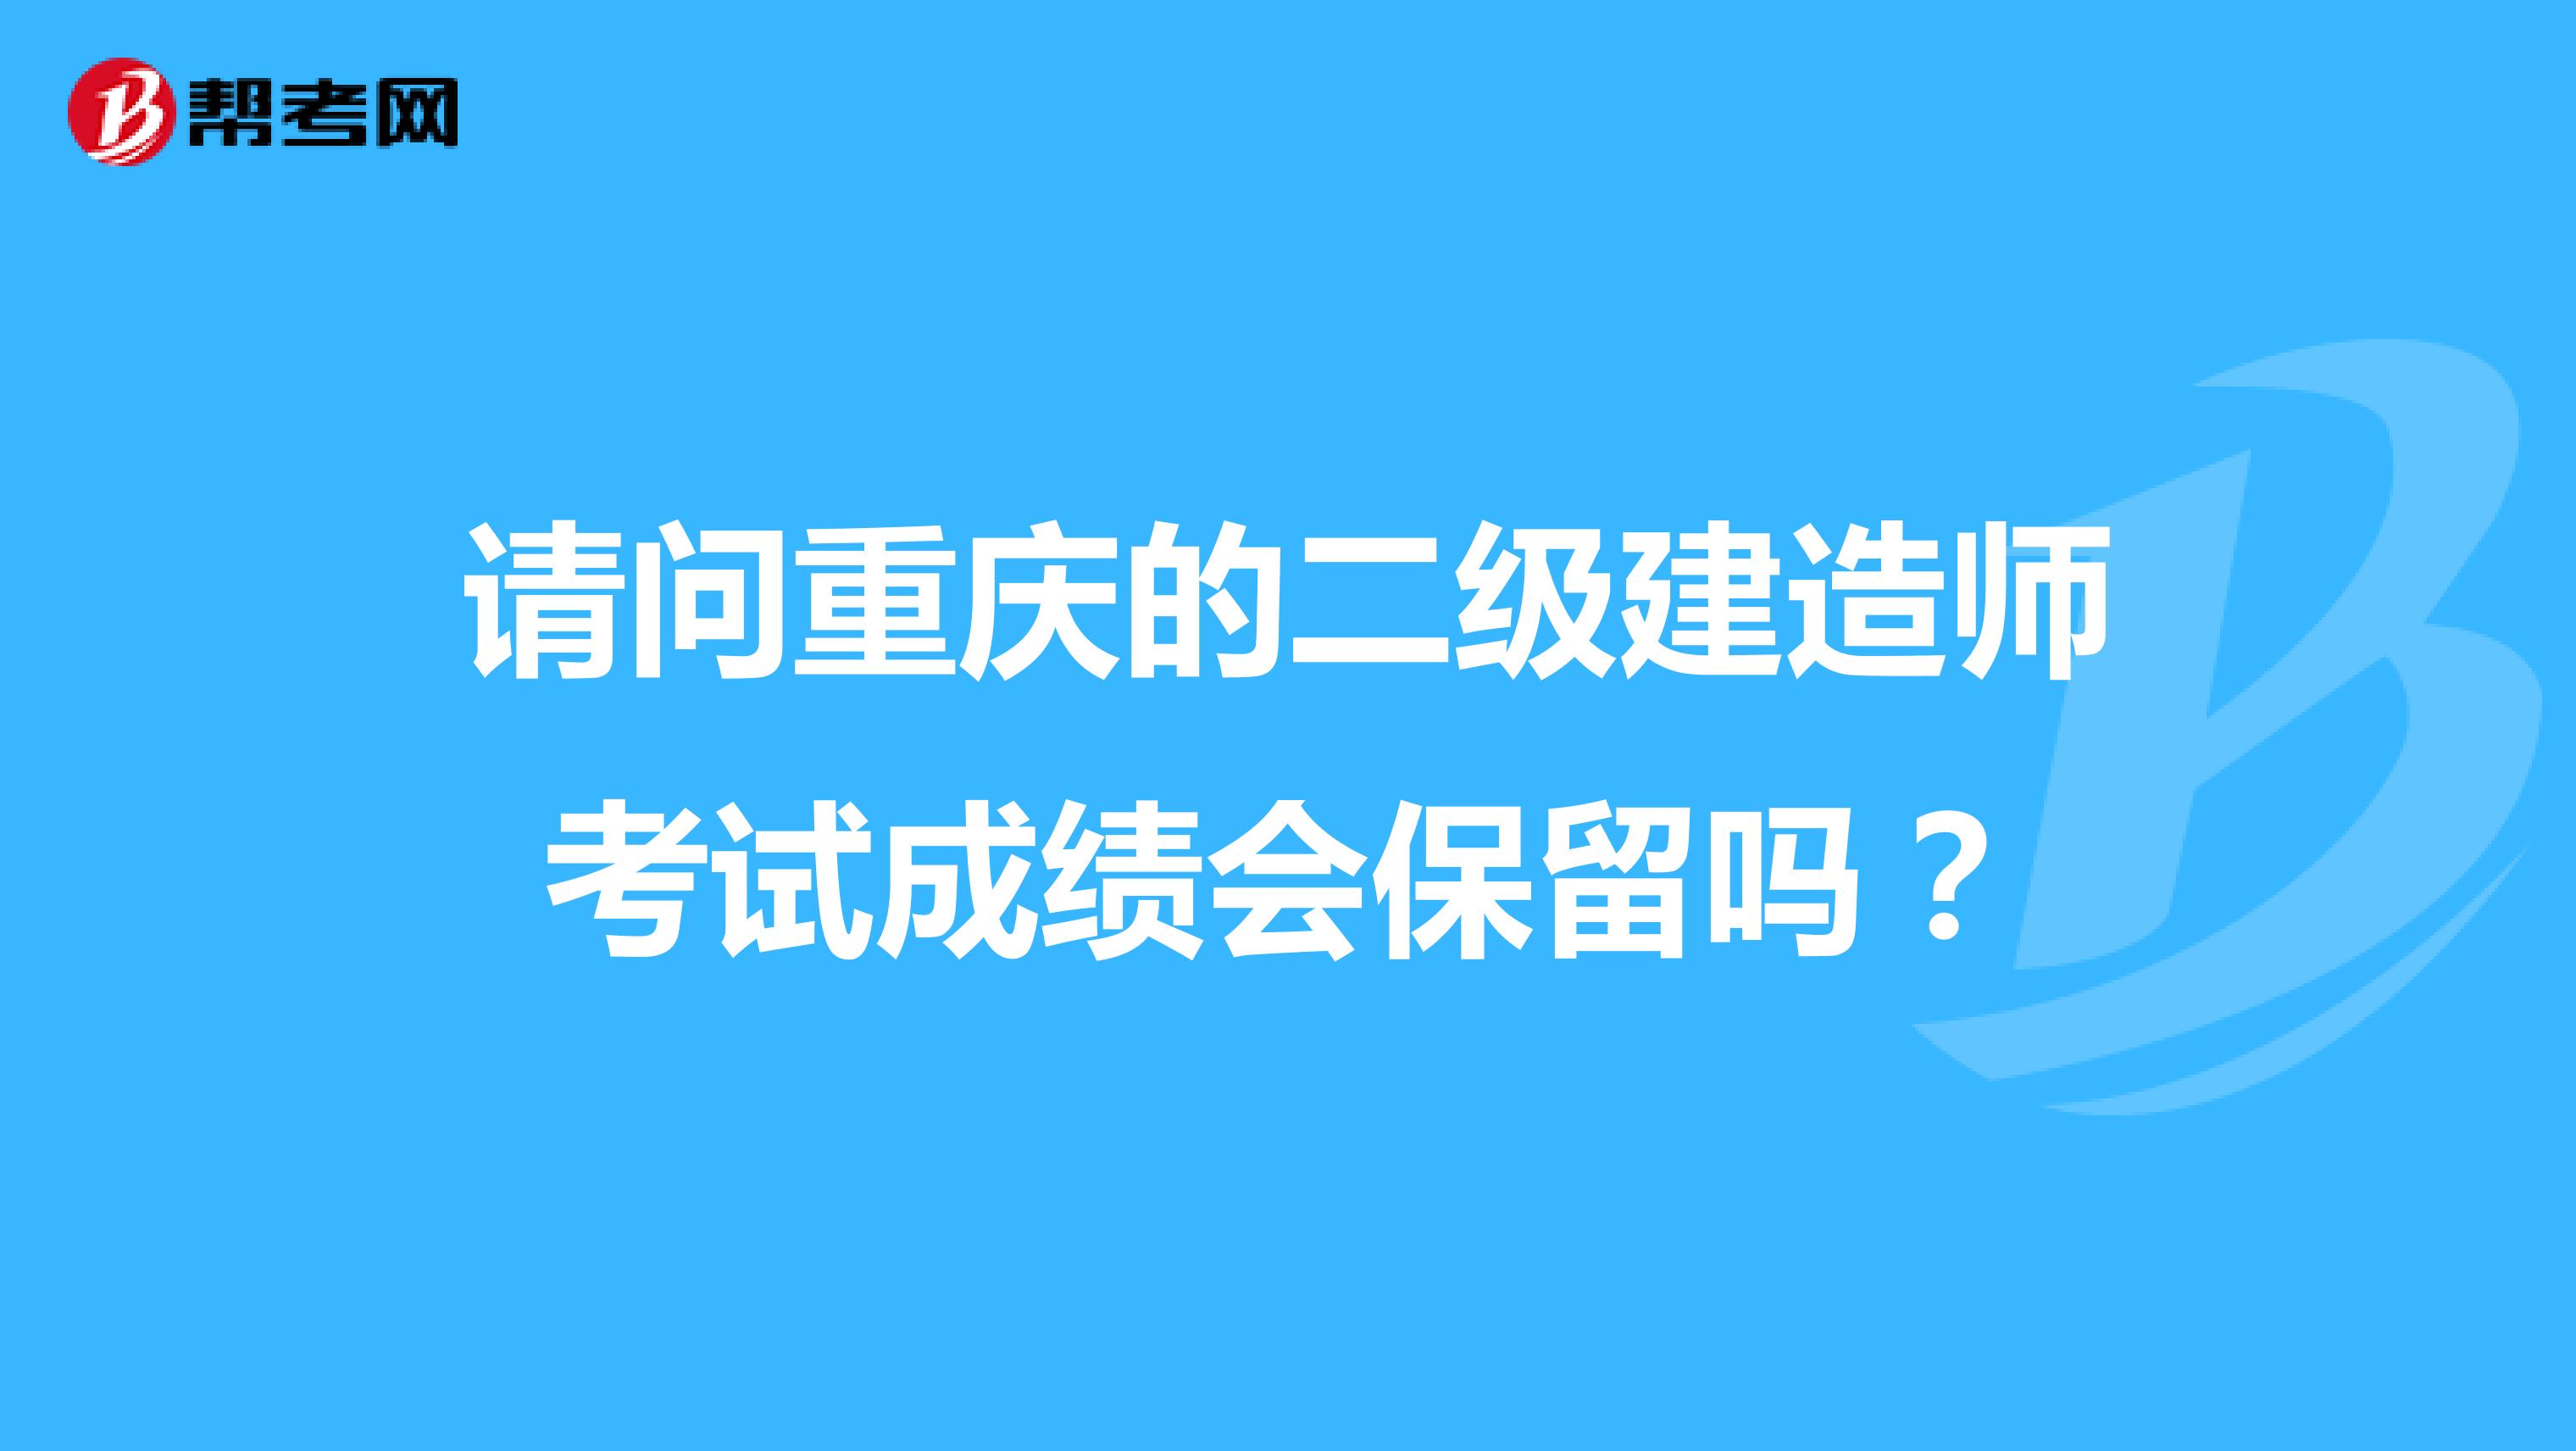 请问重庆的二级建造师考试成绩会保留吗？